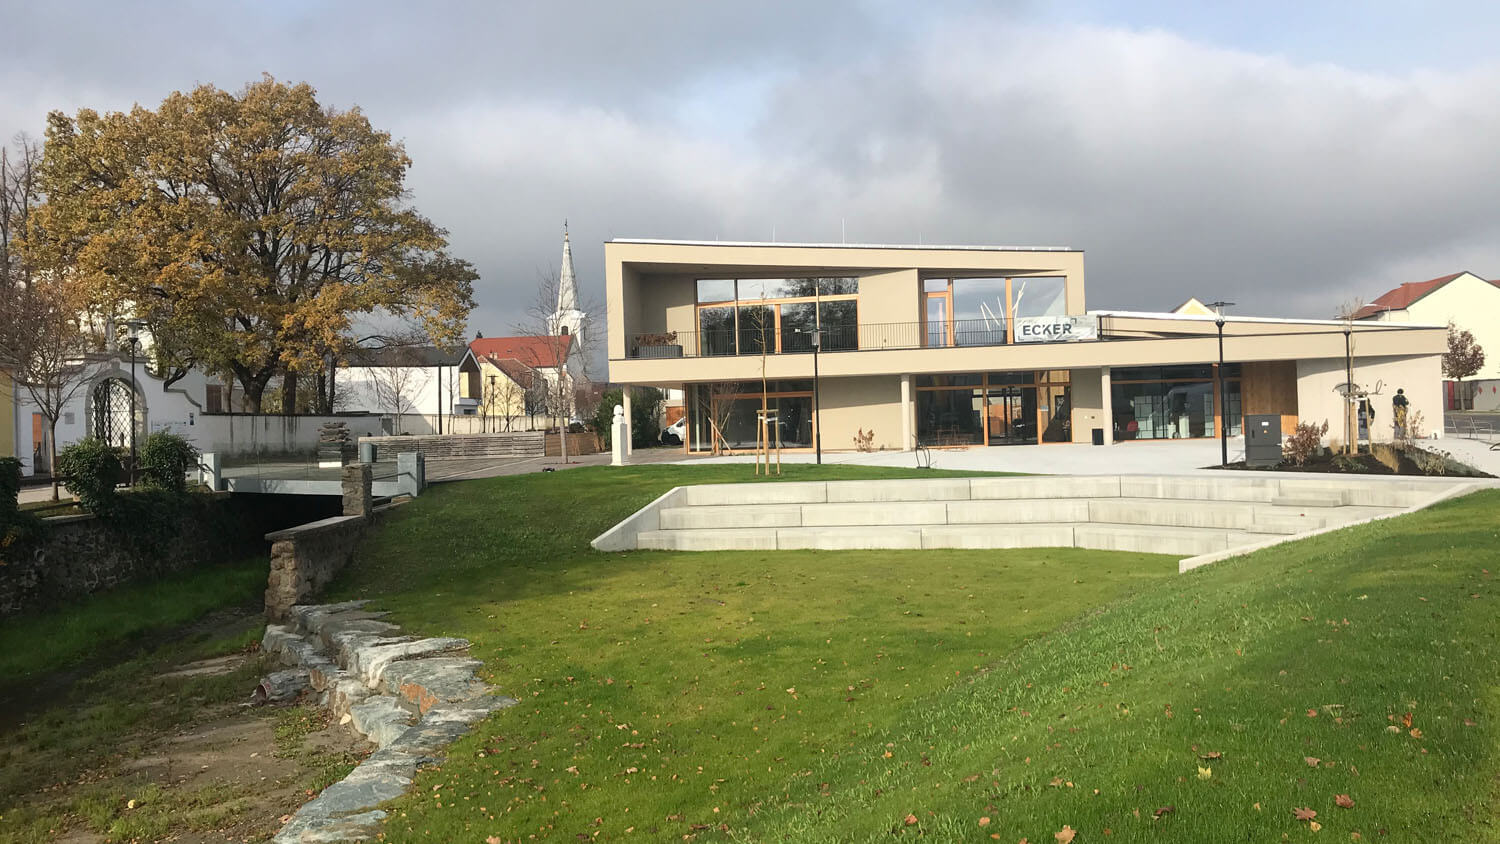 Raiding - Alles im neuen Haus: Gemeindeamt, Restaurant, Arzt-Ordination und Liszt-Bibliothek